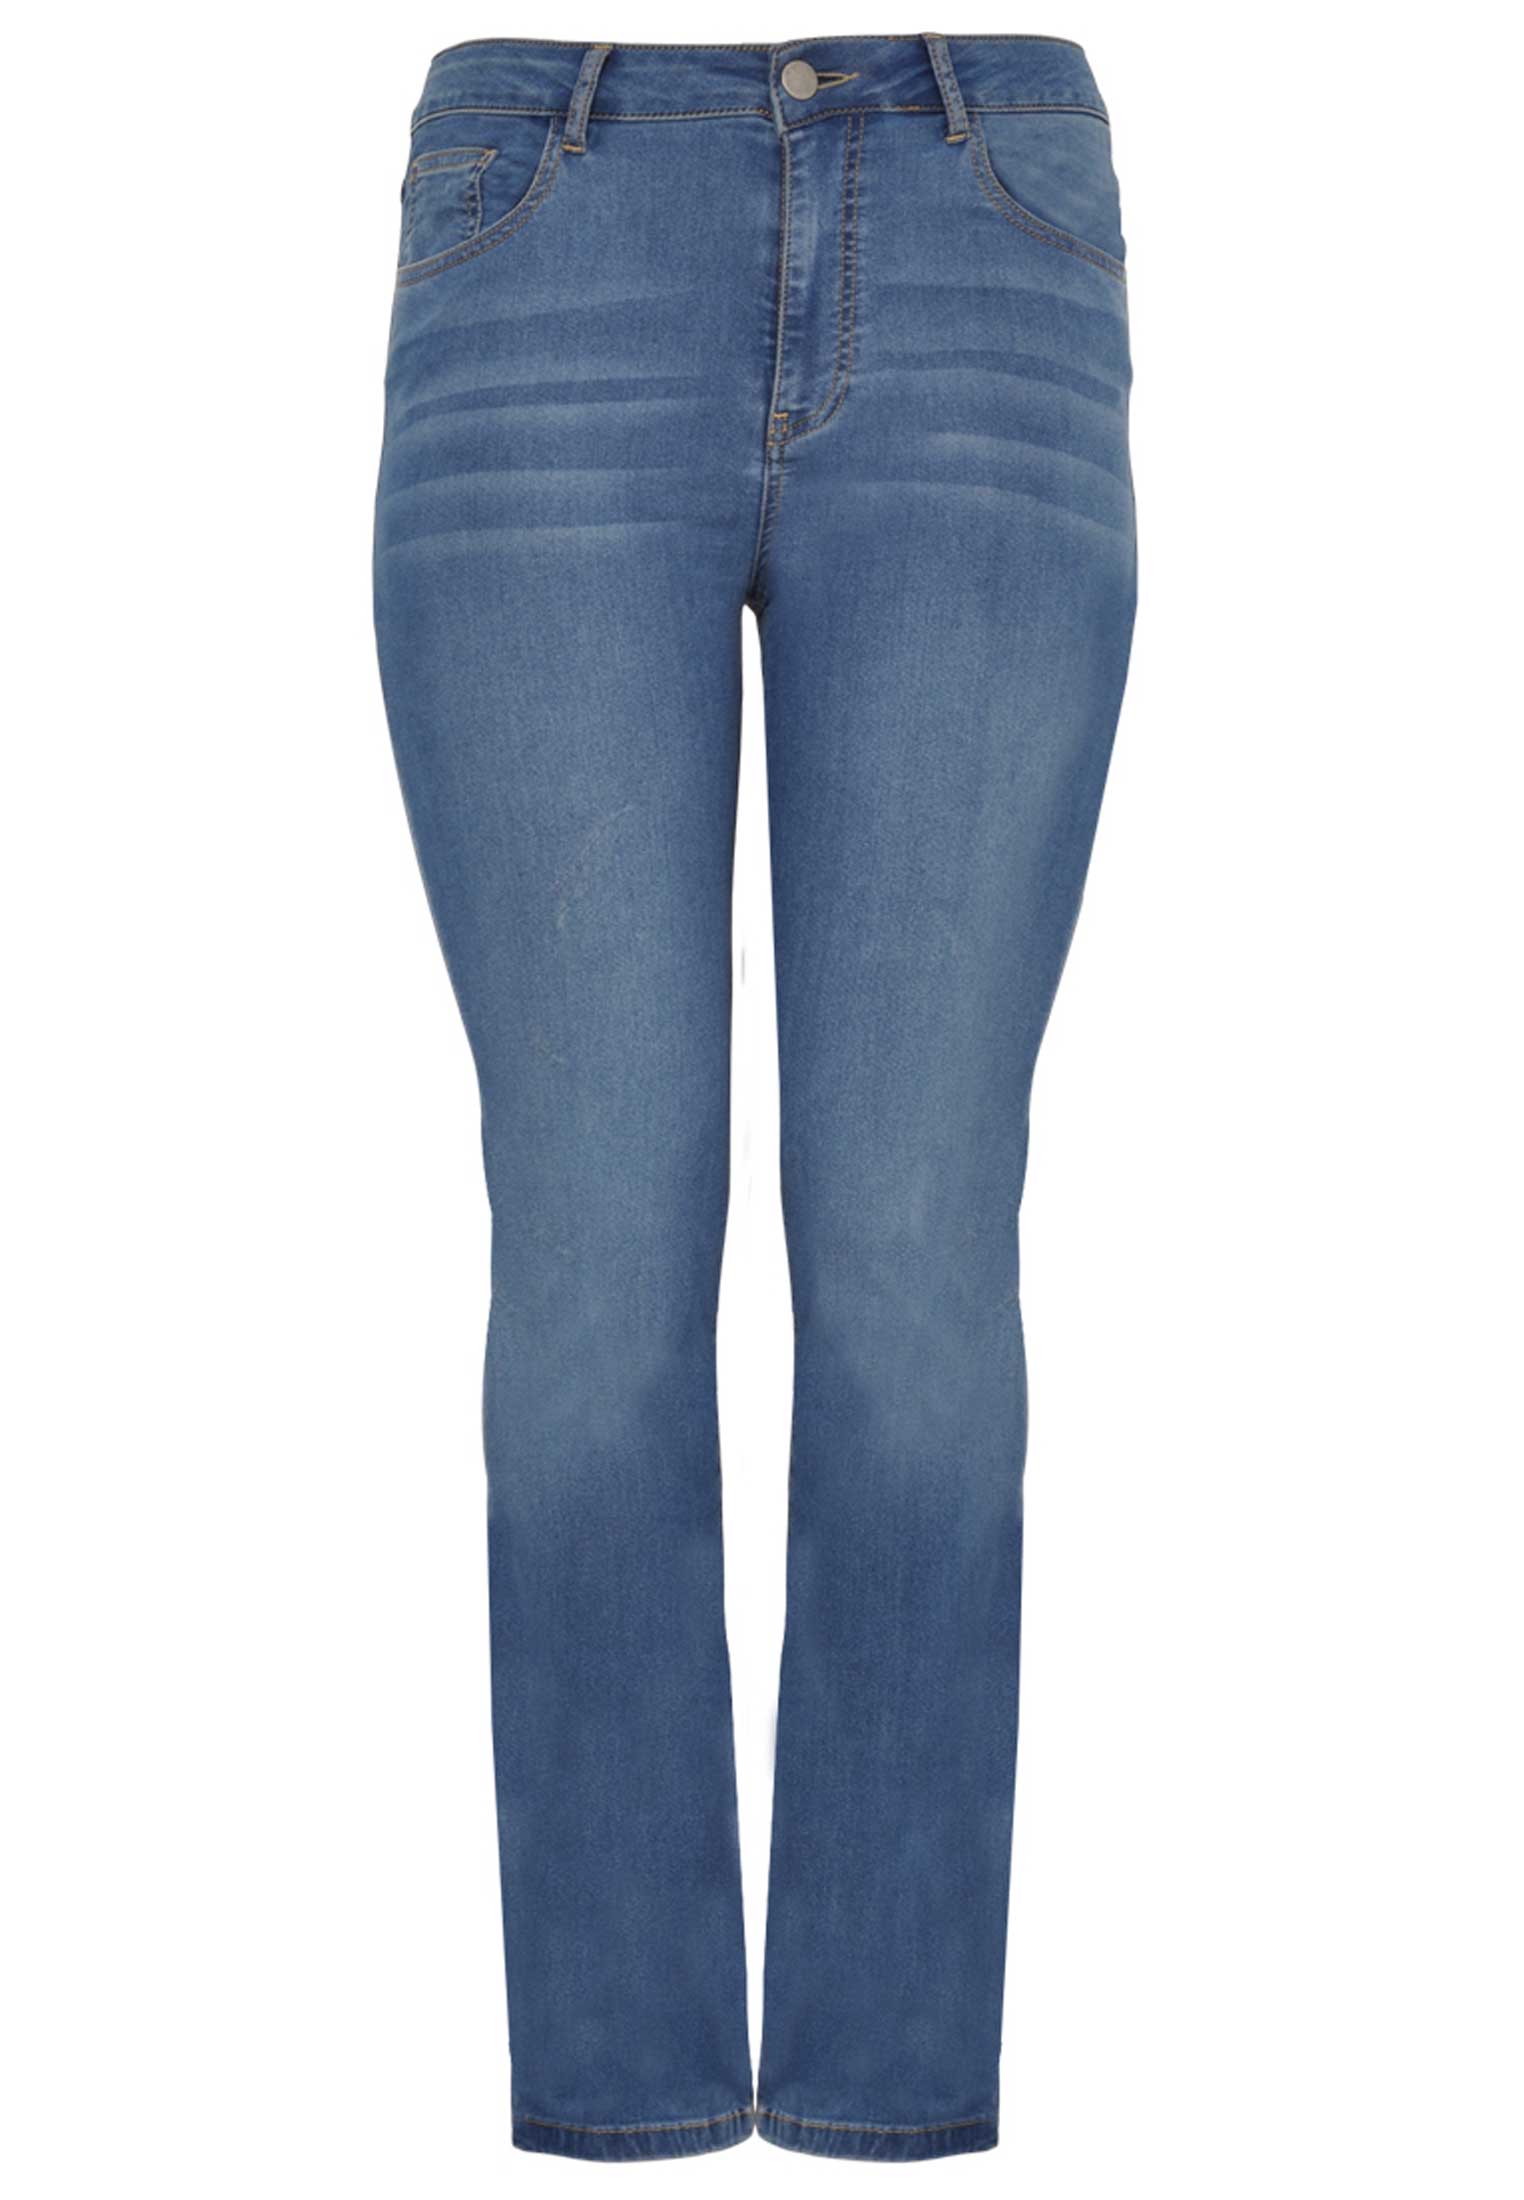 Jeans met rechte pijp 48 indigo